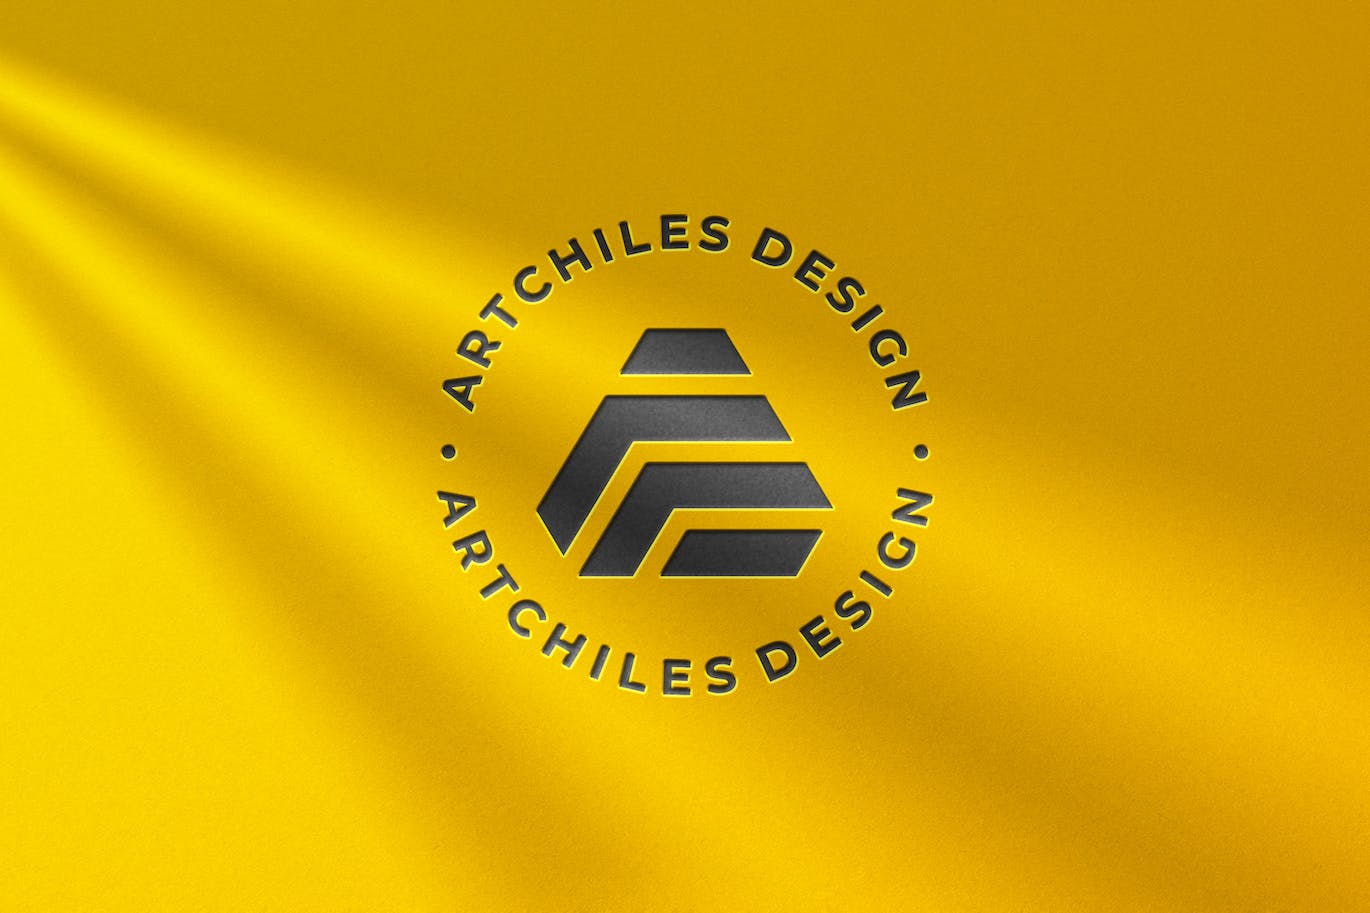 黄色浮雕工艺Logo设计样机 Embossed Logo Mockup 样机素材 第1张